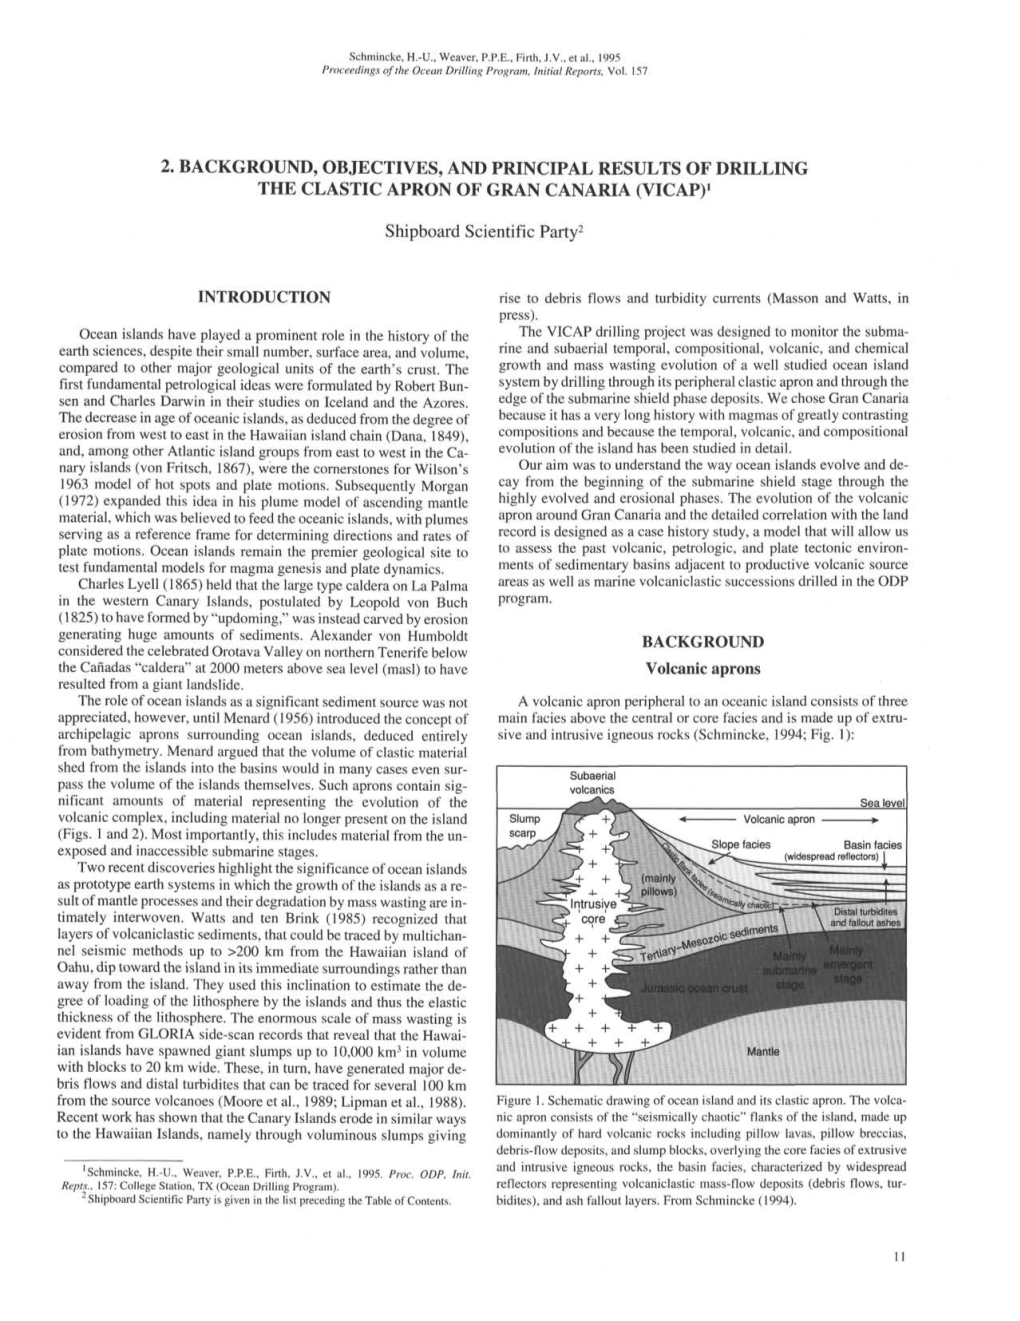 Ocean Drilling Program Initial Reports Volume